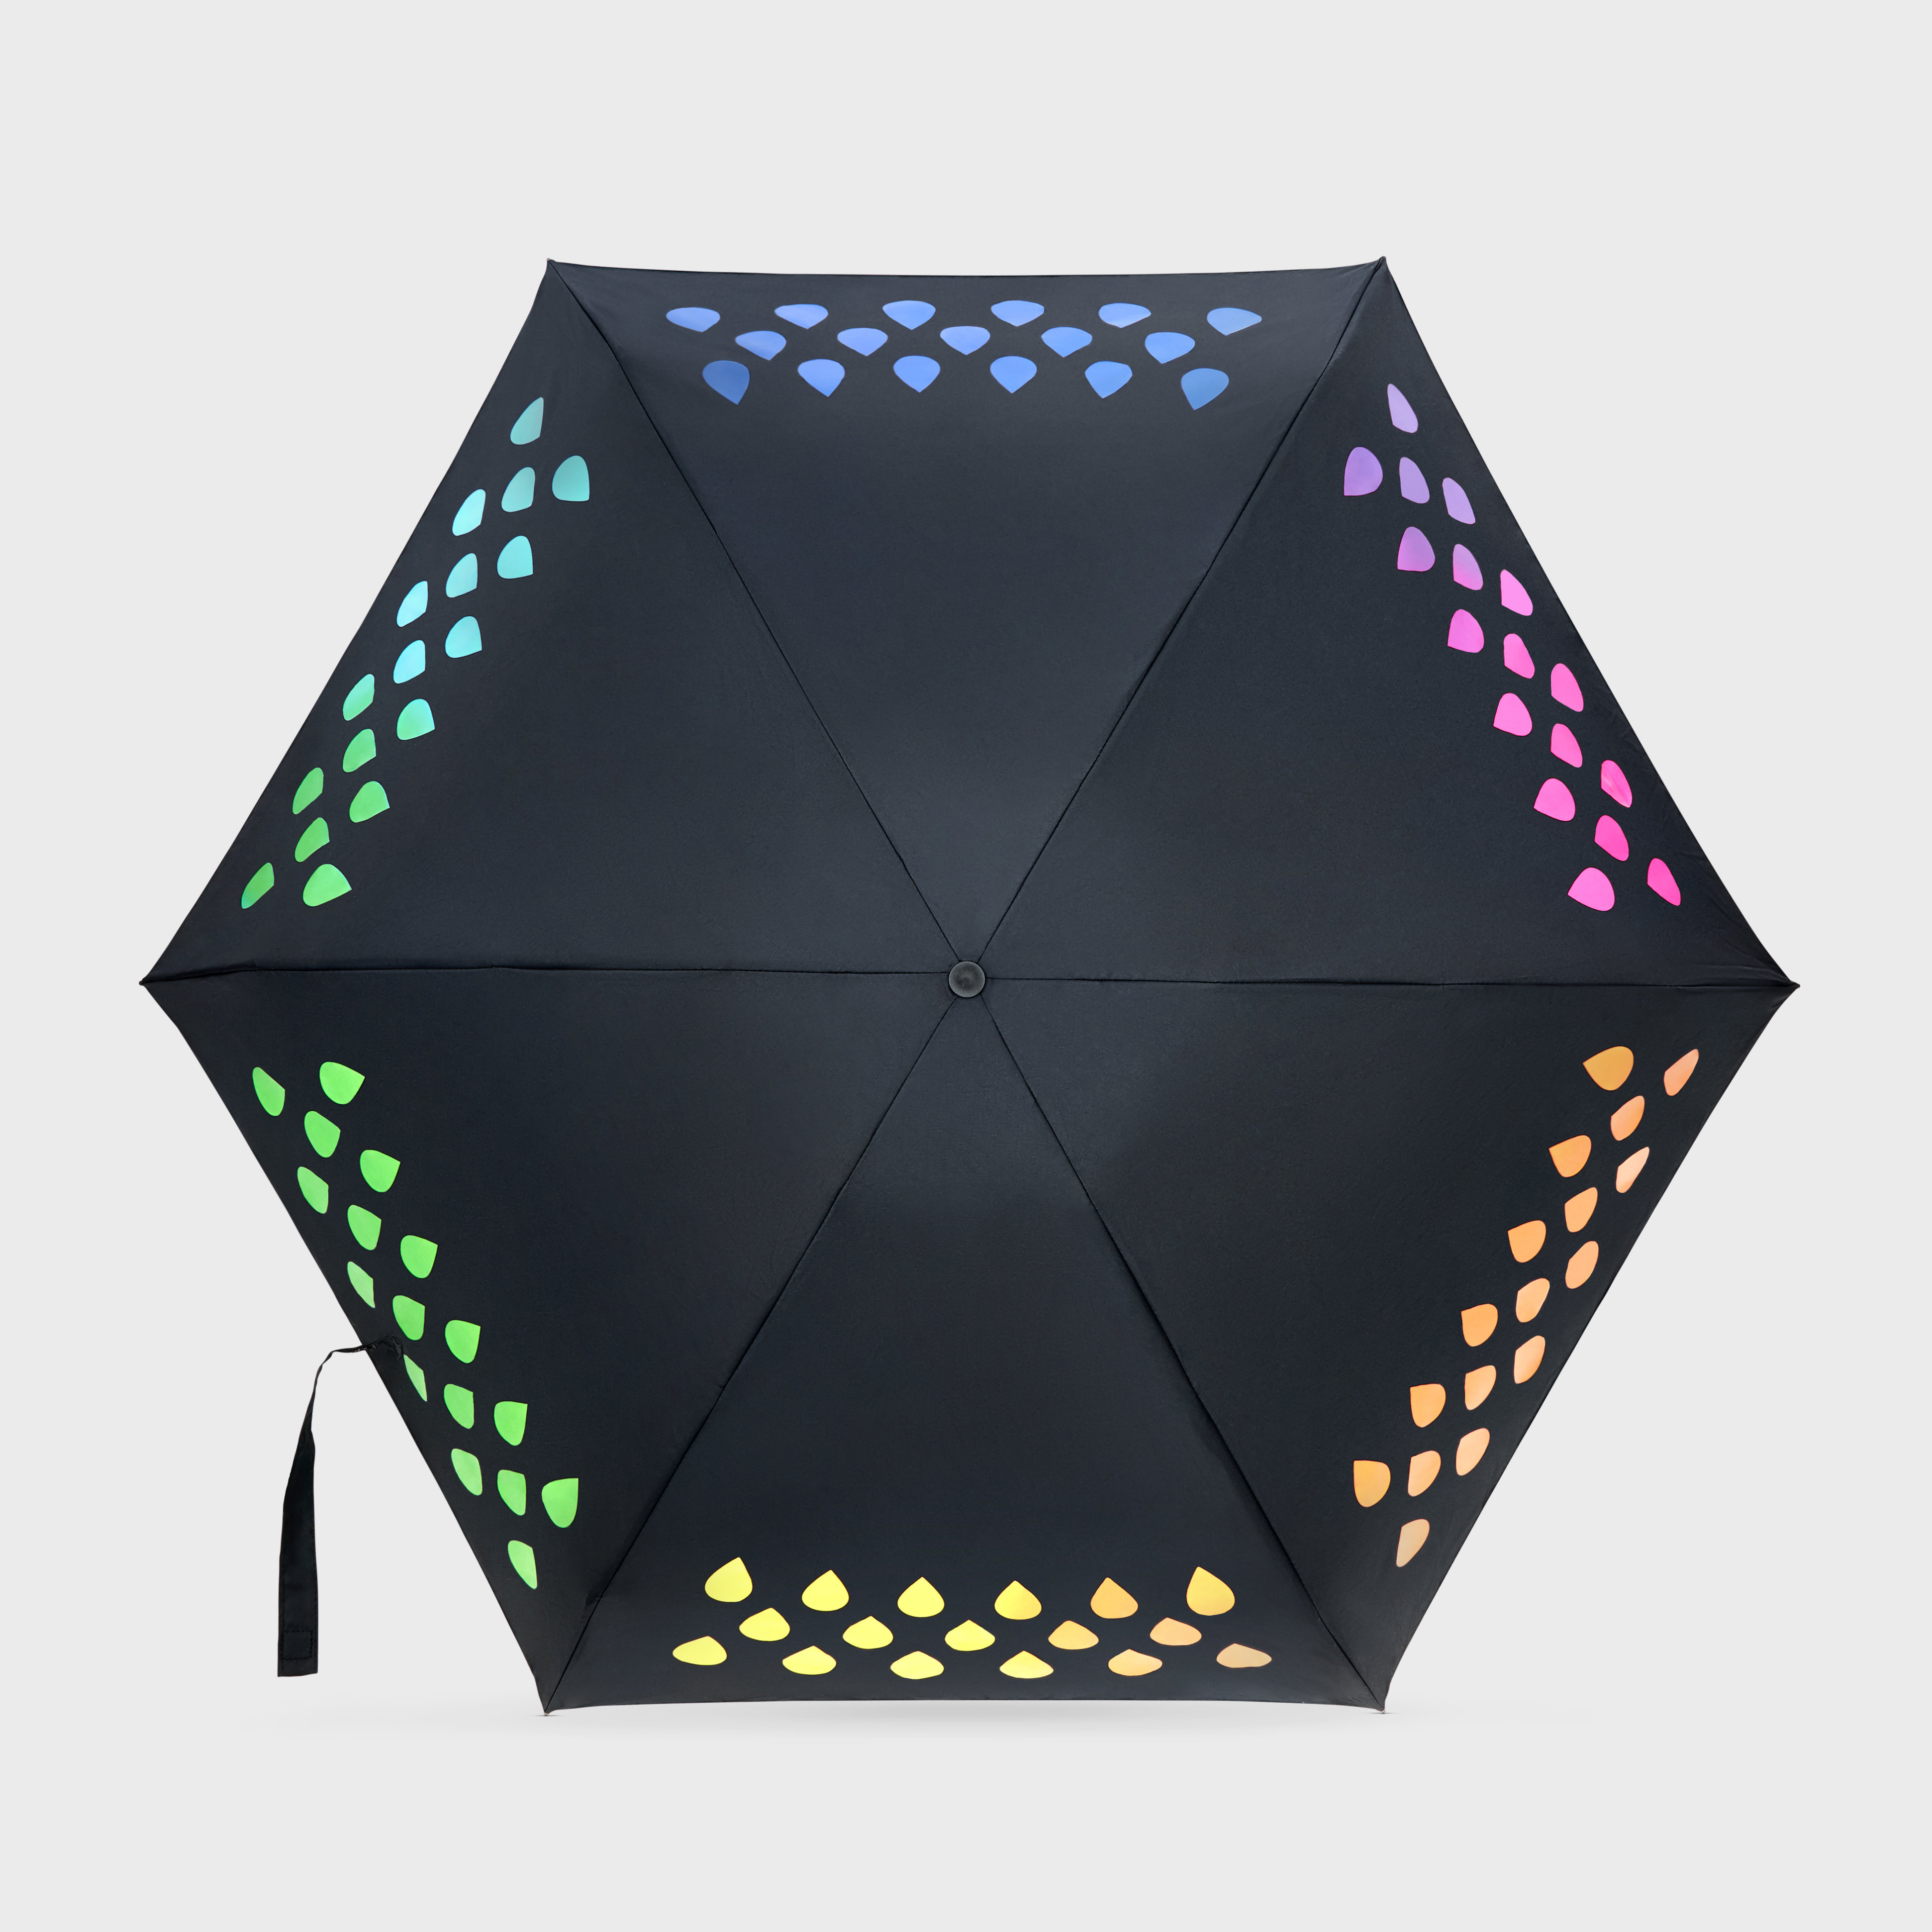 Umbrella Changes Colour When it Rains